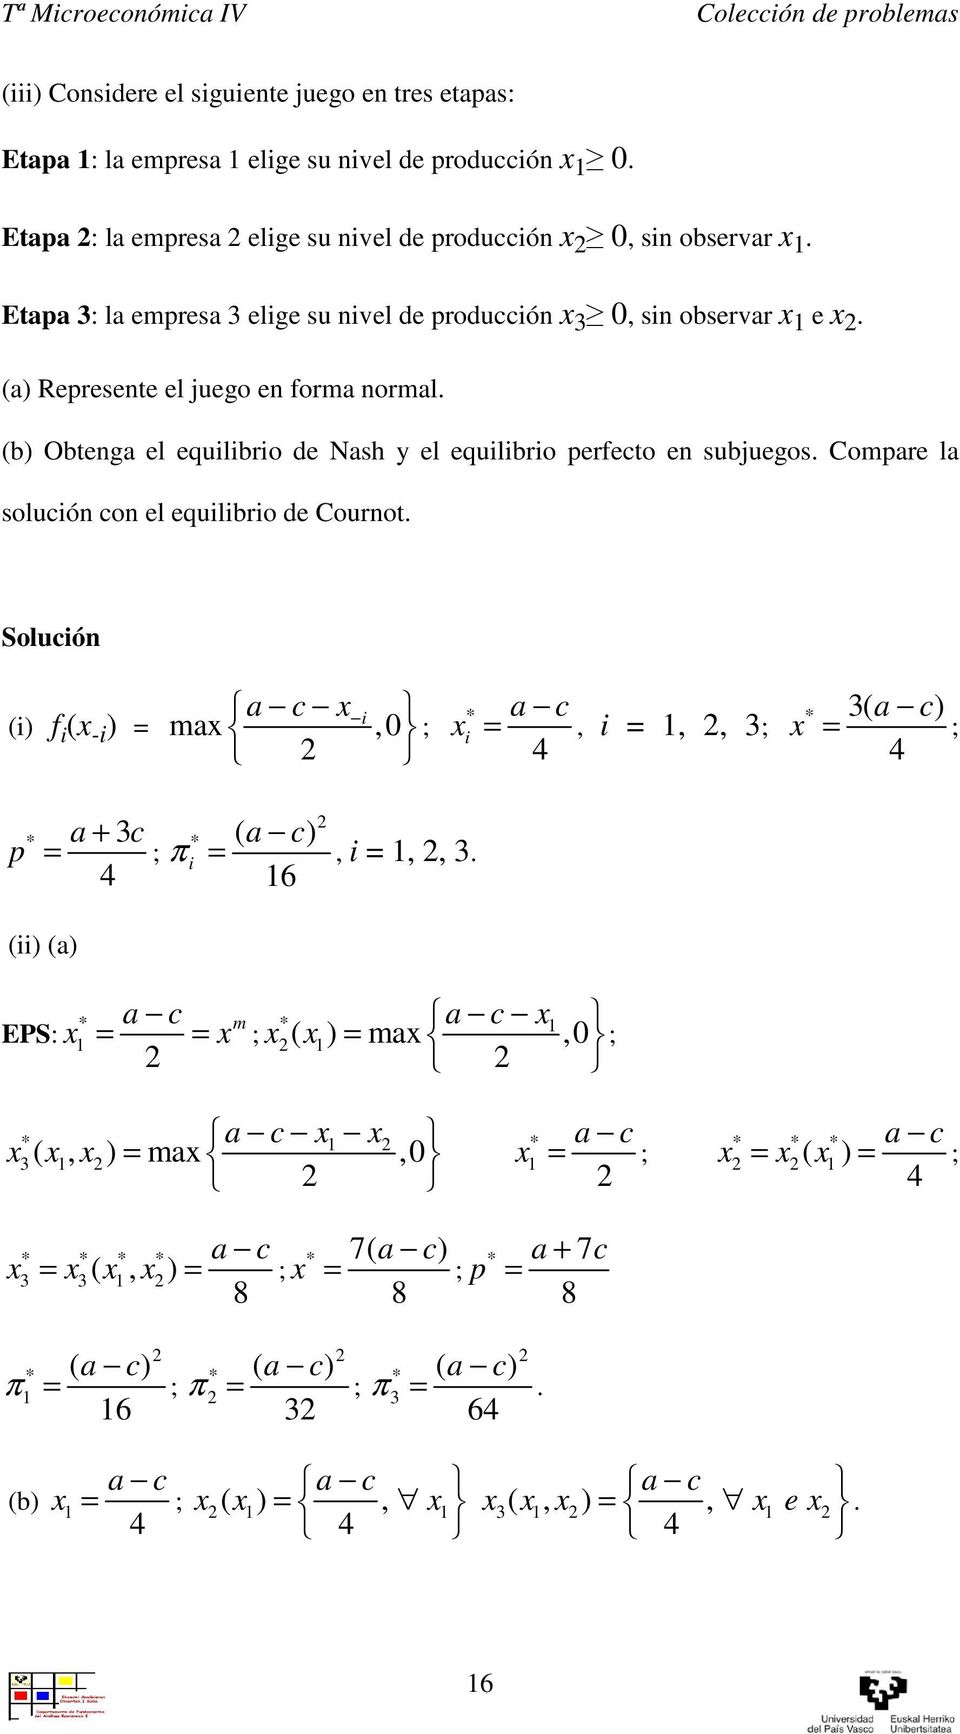 Compare la solucón con el equlbro de Cournot. a c () f ( - ) = ma,0 ; * a c =, =,, 3; 4 * 3( a c) 4 = ; p * a + 3 () (a) EPS: 4 c = ; * * ( a c) π =, =,, 3.